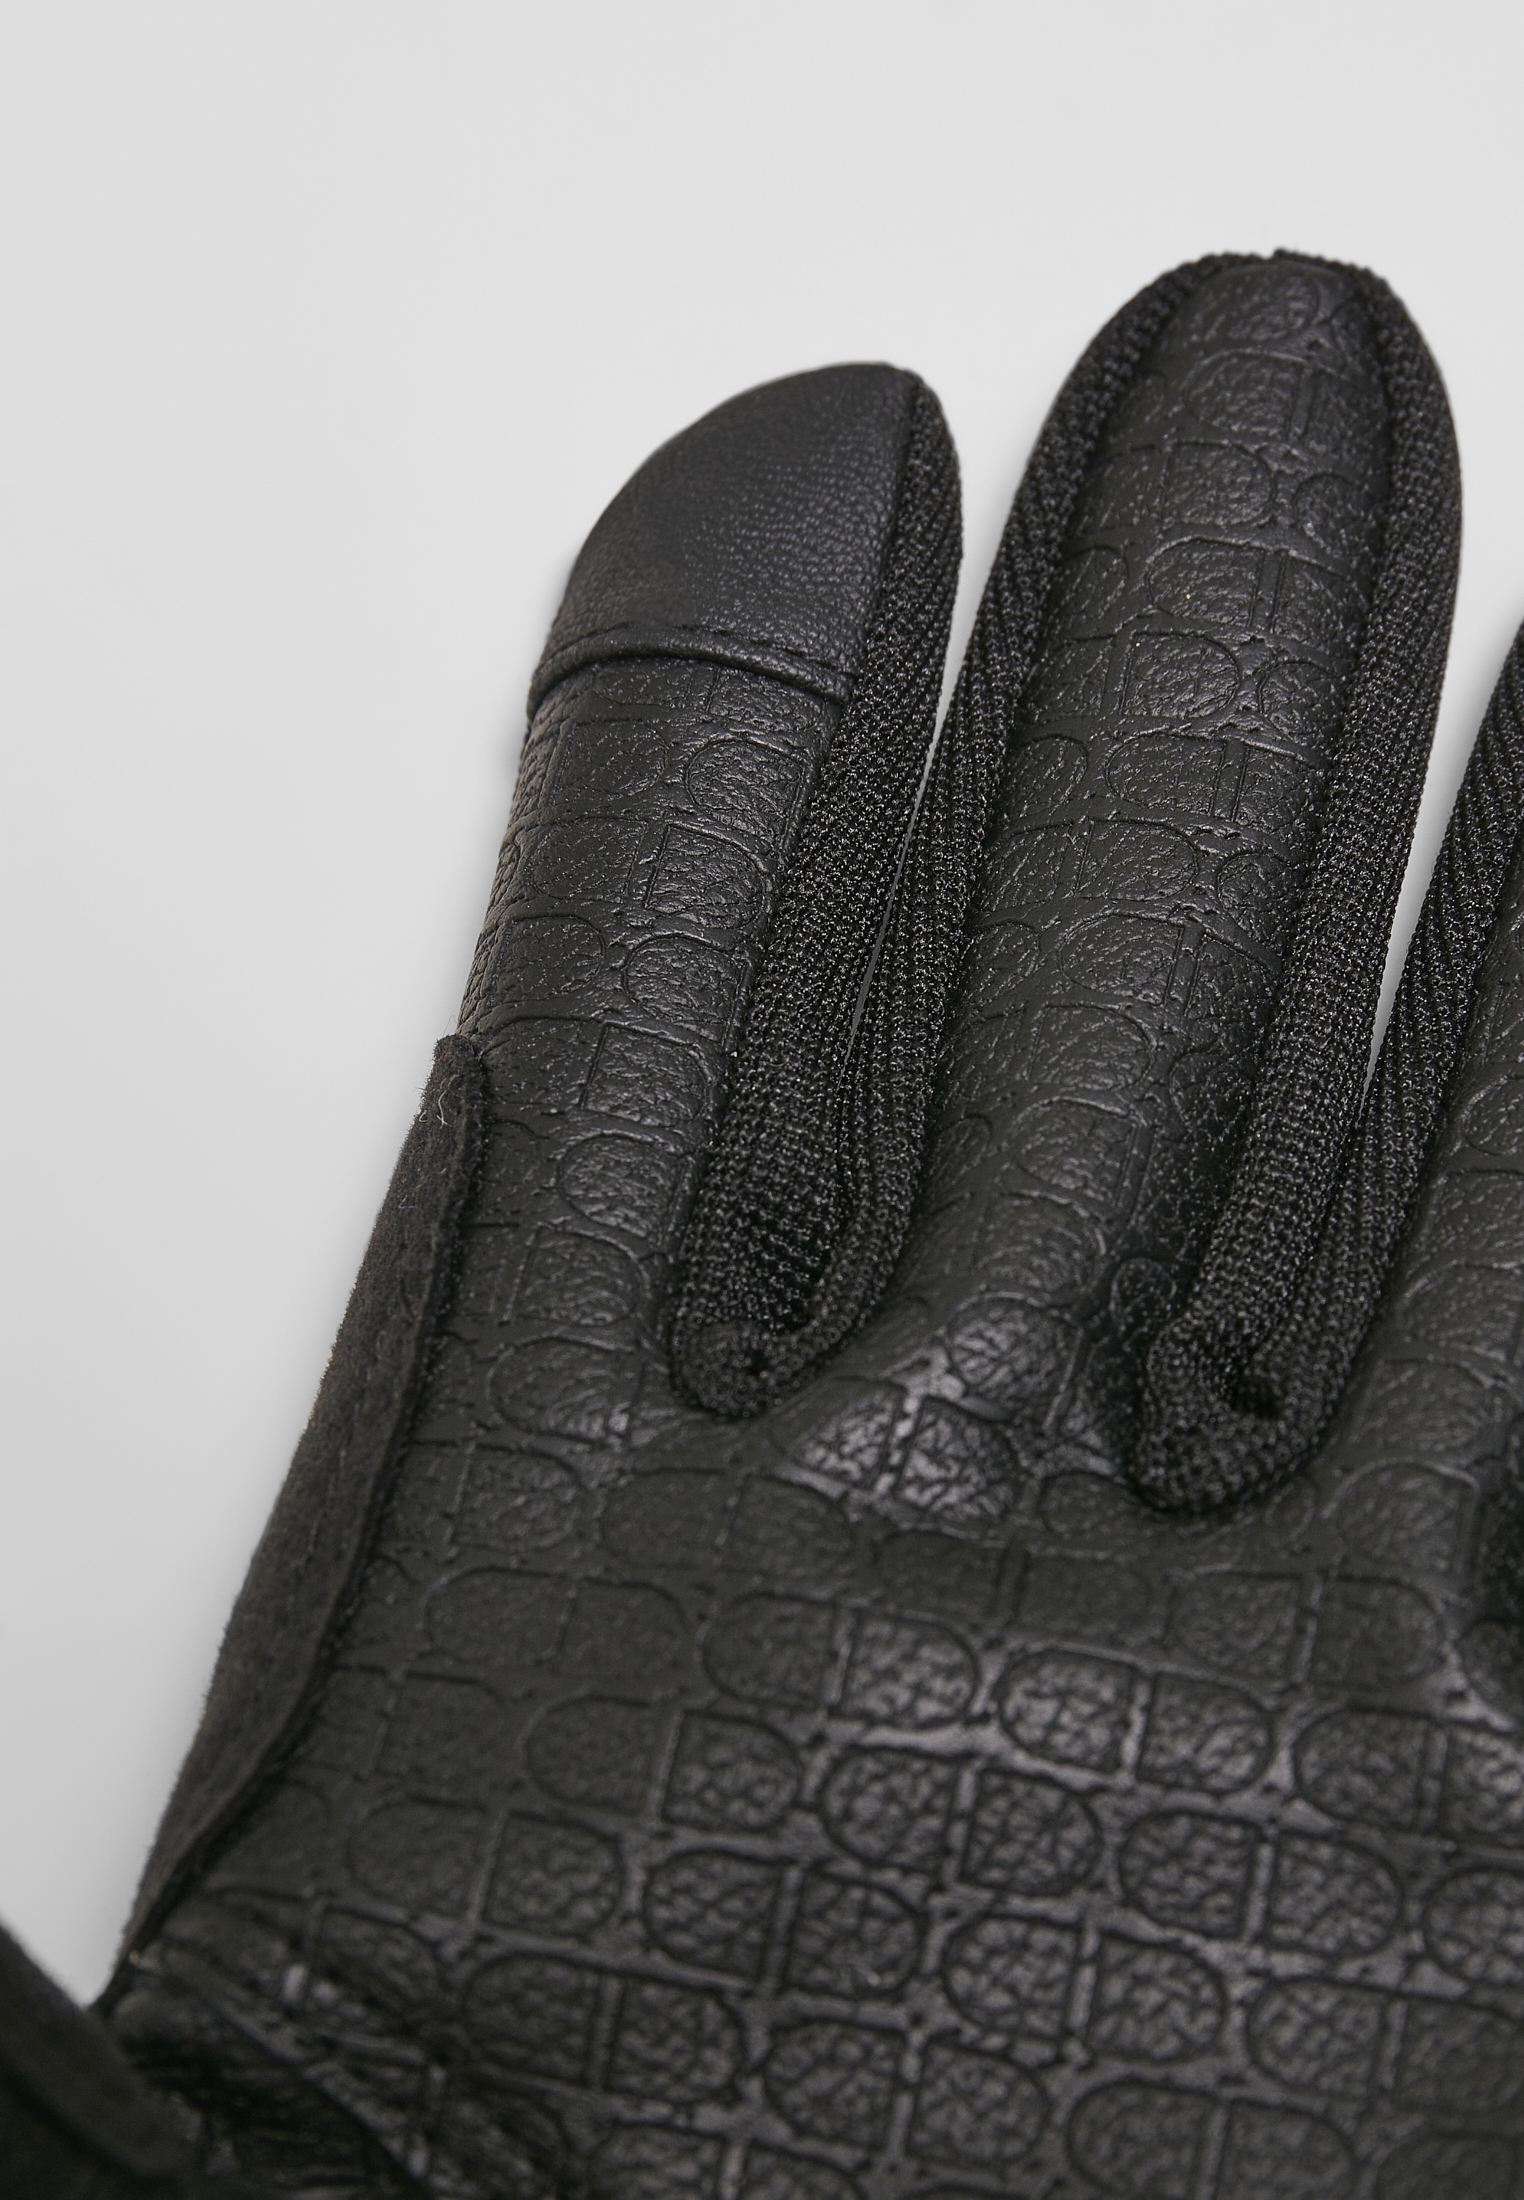 Handschuhe & Schals Performance Winter Gloves in Farbe black